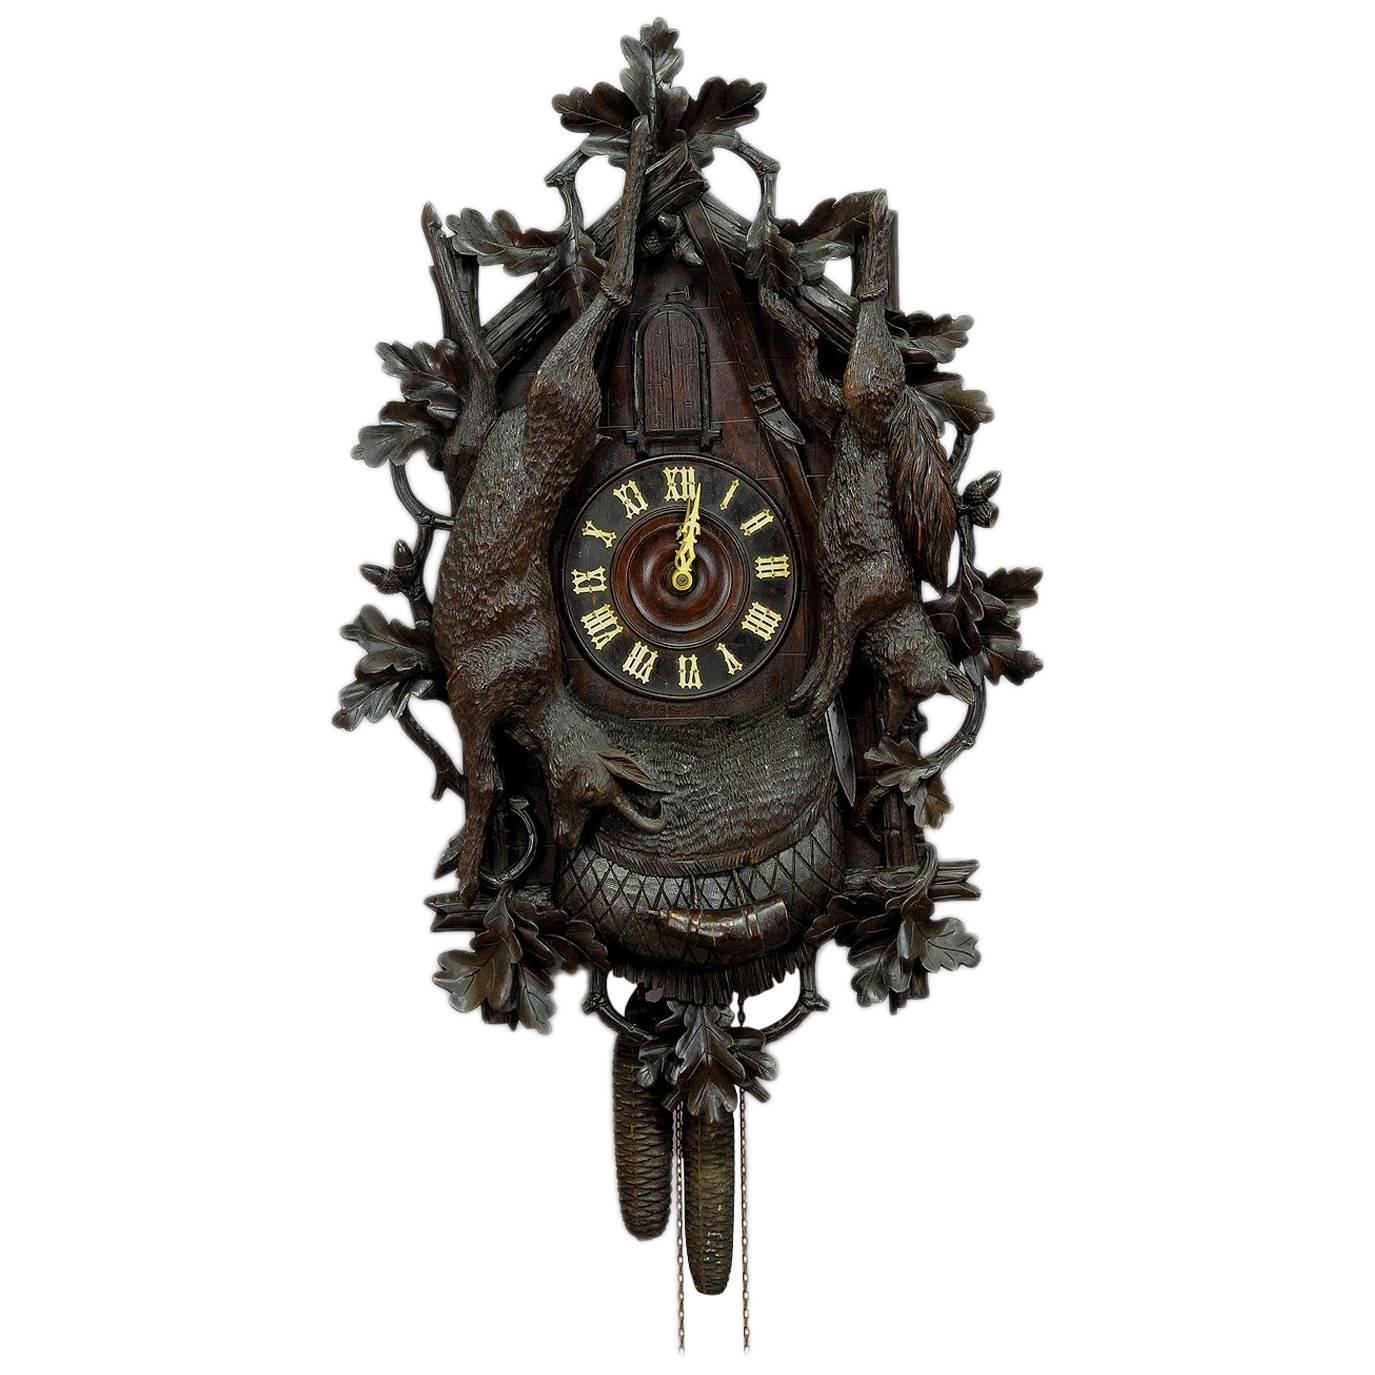 Rare Antique Black Forest Trumpeter Clock, circa 1900